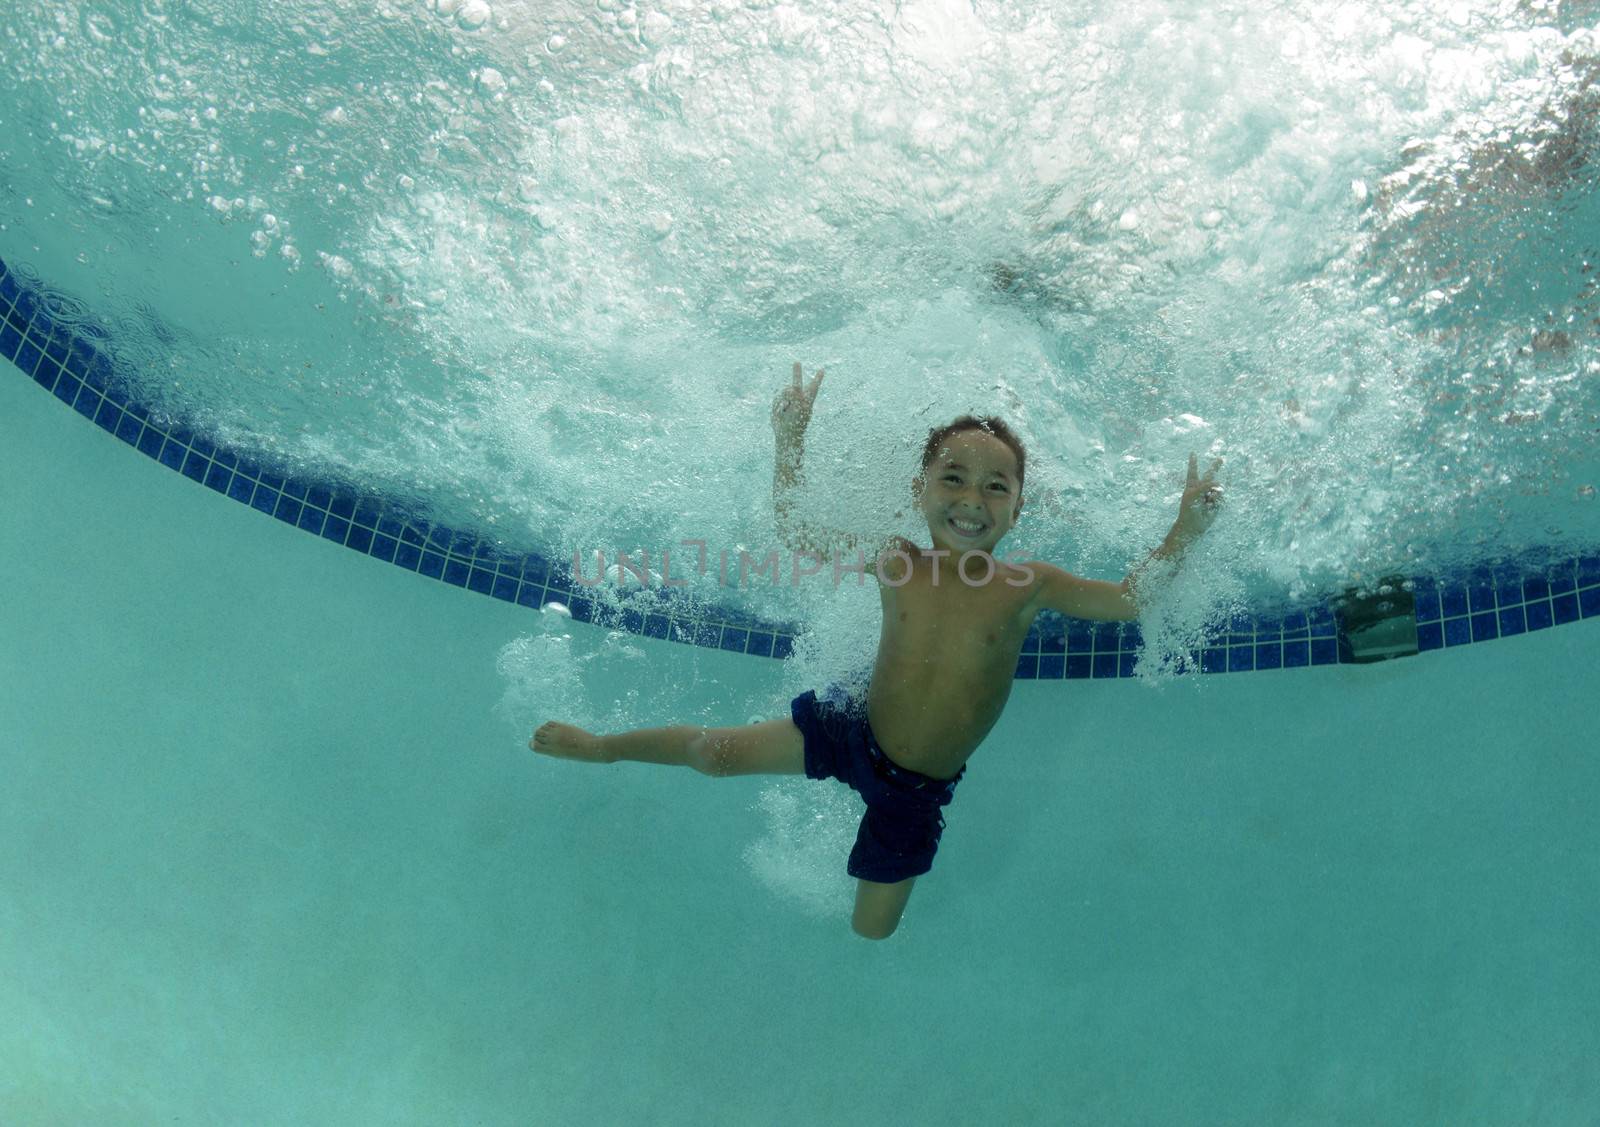 kid smiling underwater in swimming pool by ftlaudgirl